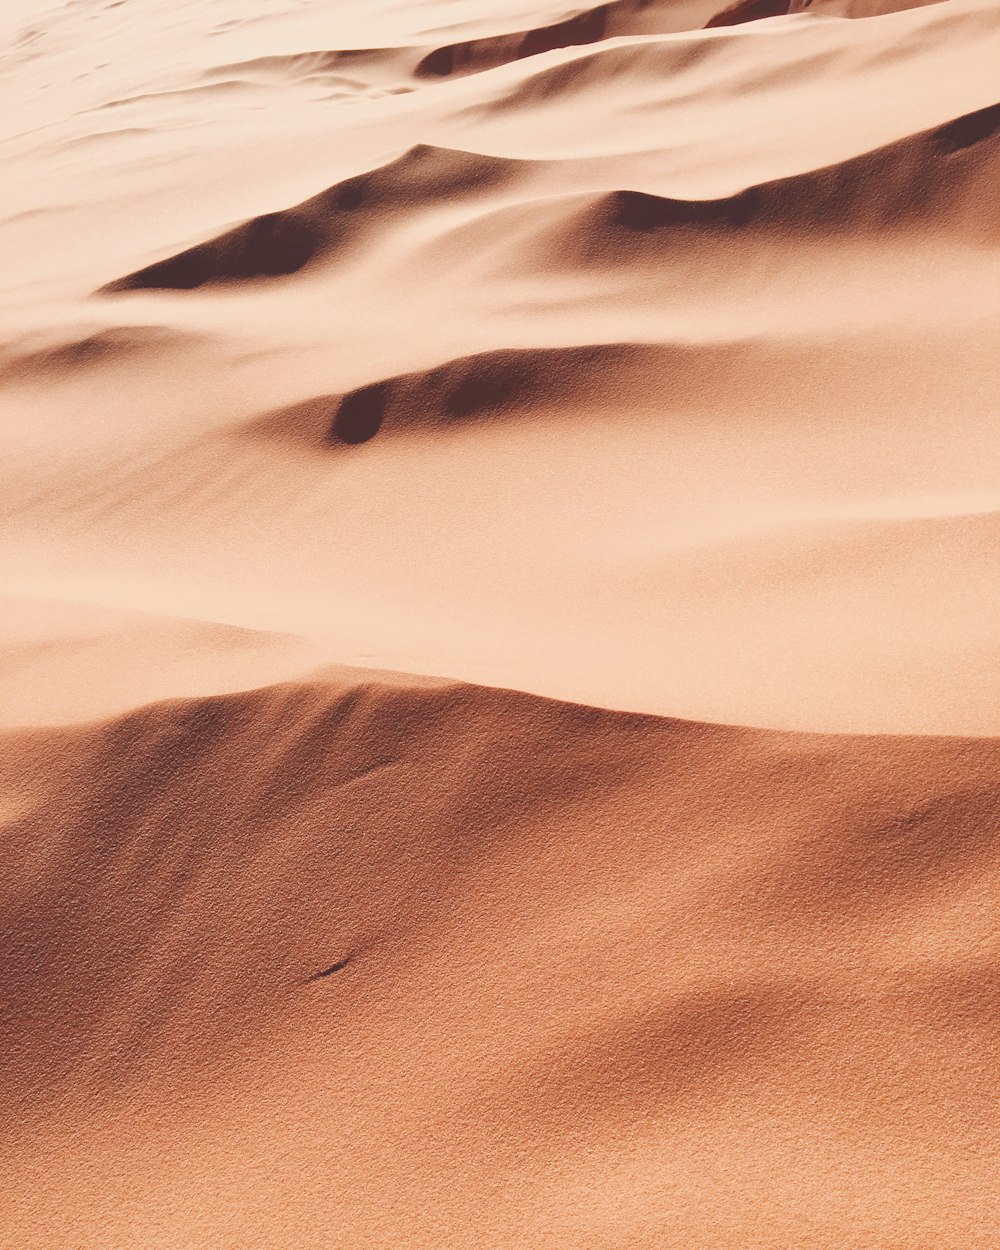 사막 모래 사진 사진 – Unsplash의 무료 텍스처 이미지